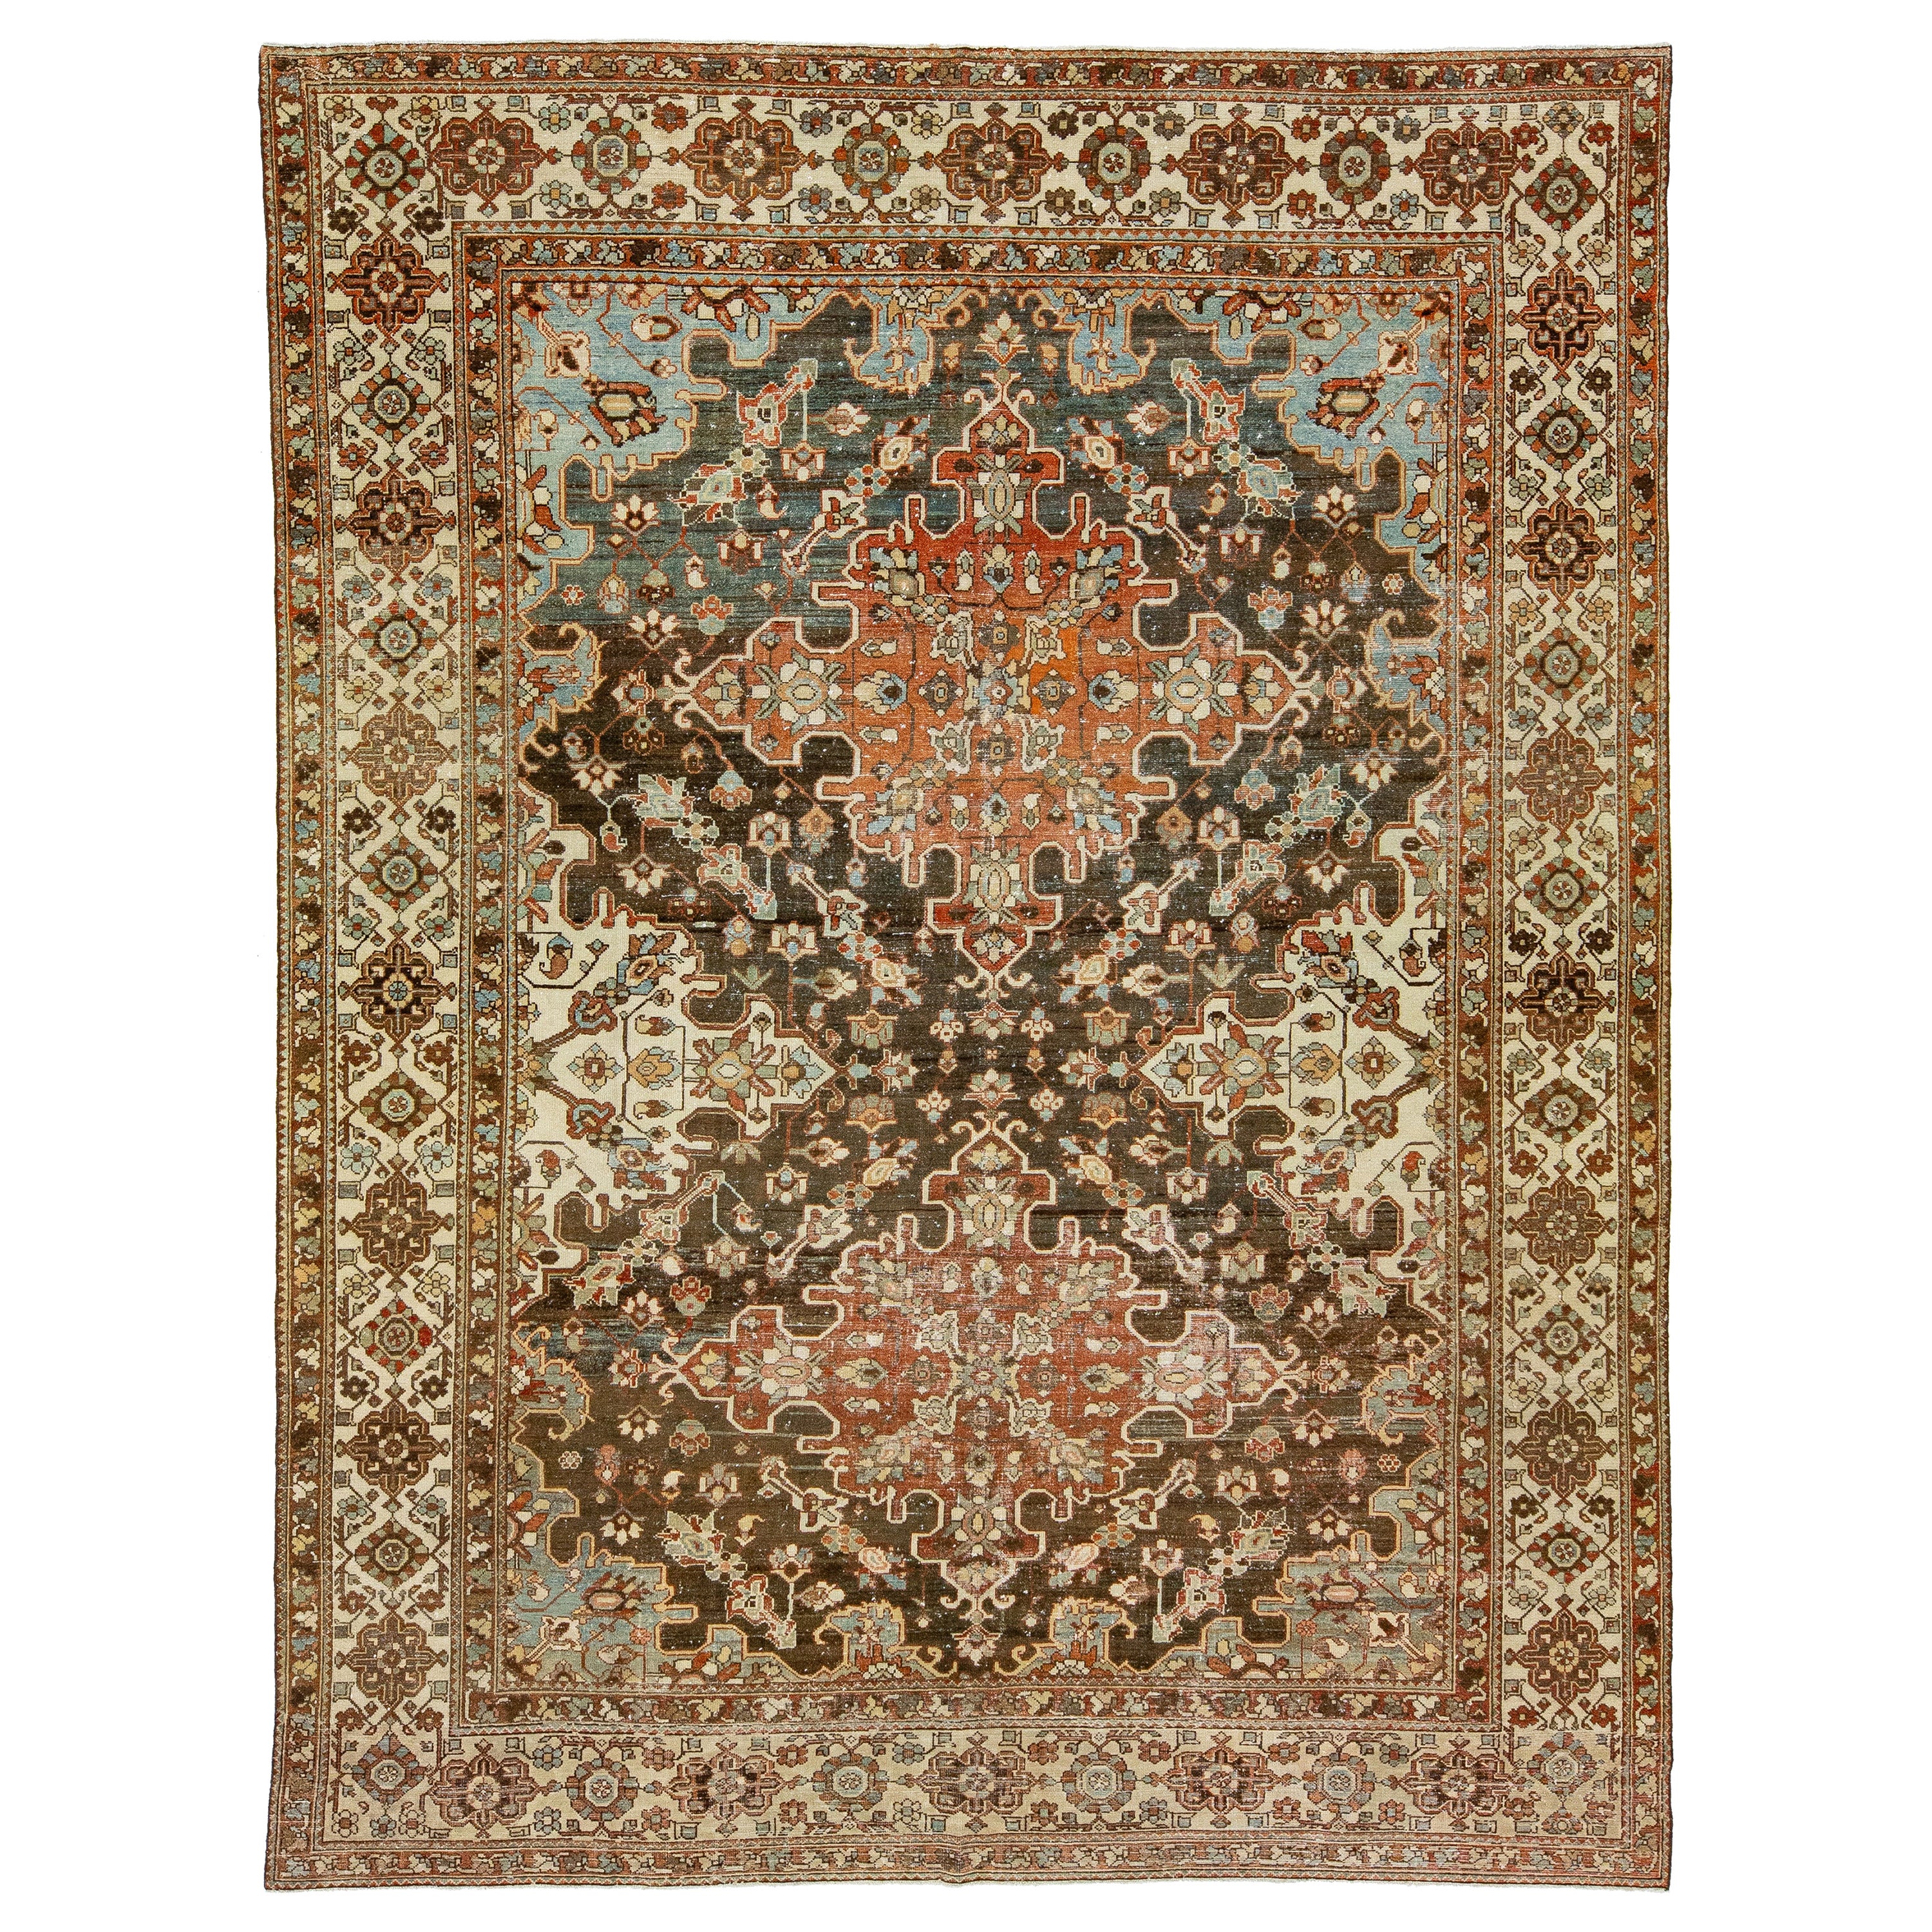 Persischer Bachtiari-Teppich aus roter Wolle mit mehrfarbigem Blumenmotiv aus den 1920er Jahren